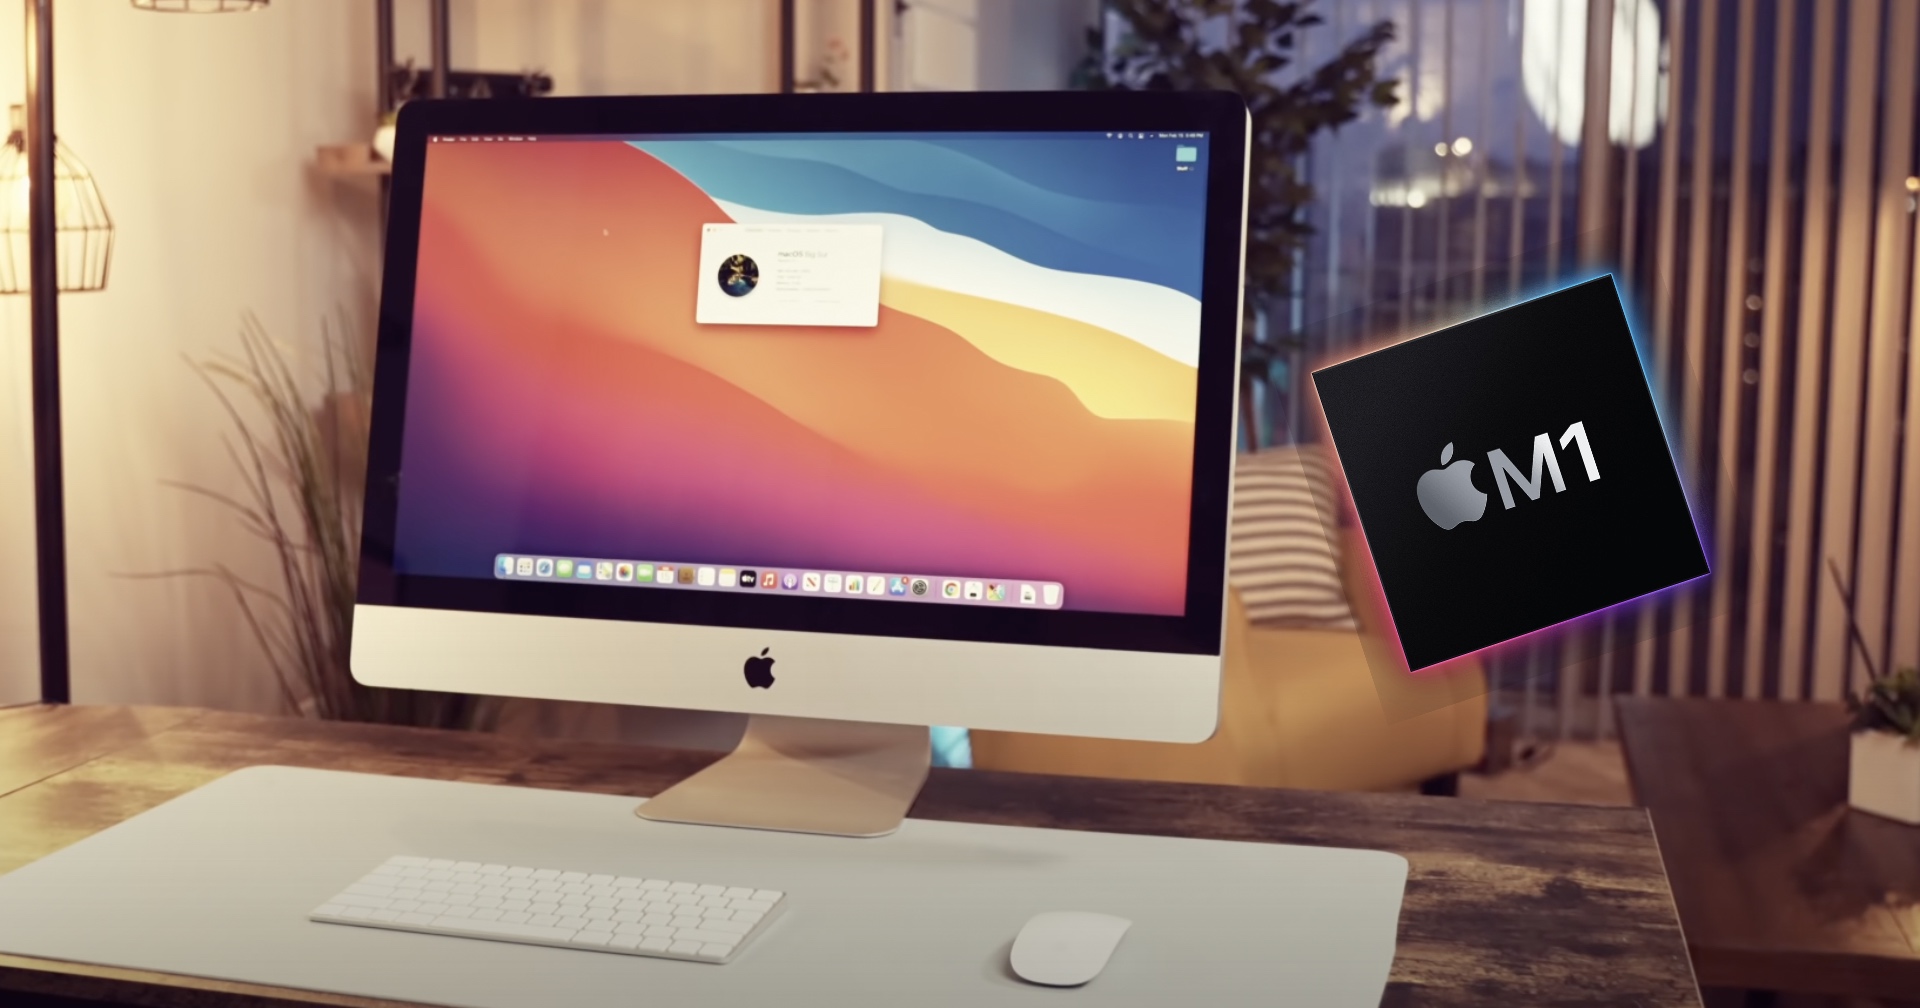 คนมันรอไม่ไหว! YouTuber จัดการประกอบ iMac เวอร์ชัน Apple M1 ขึ้นมาเองซะเลย